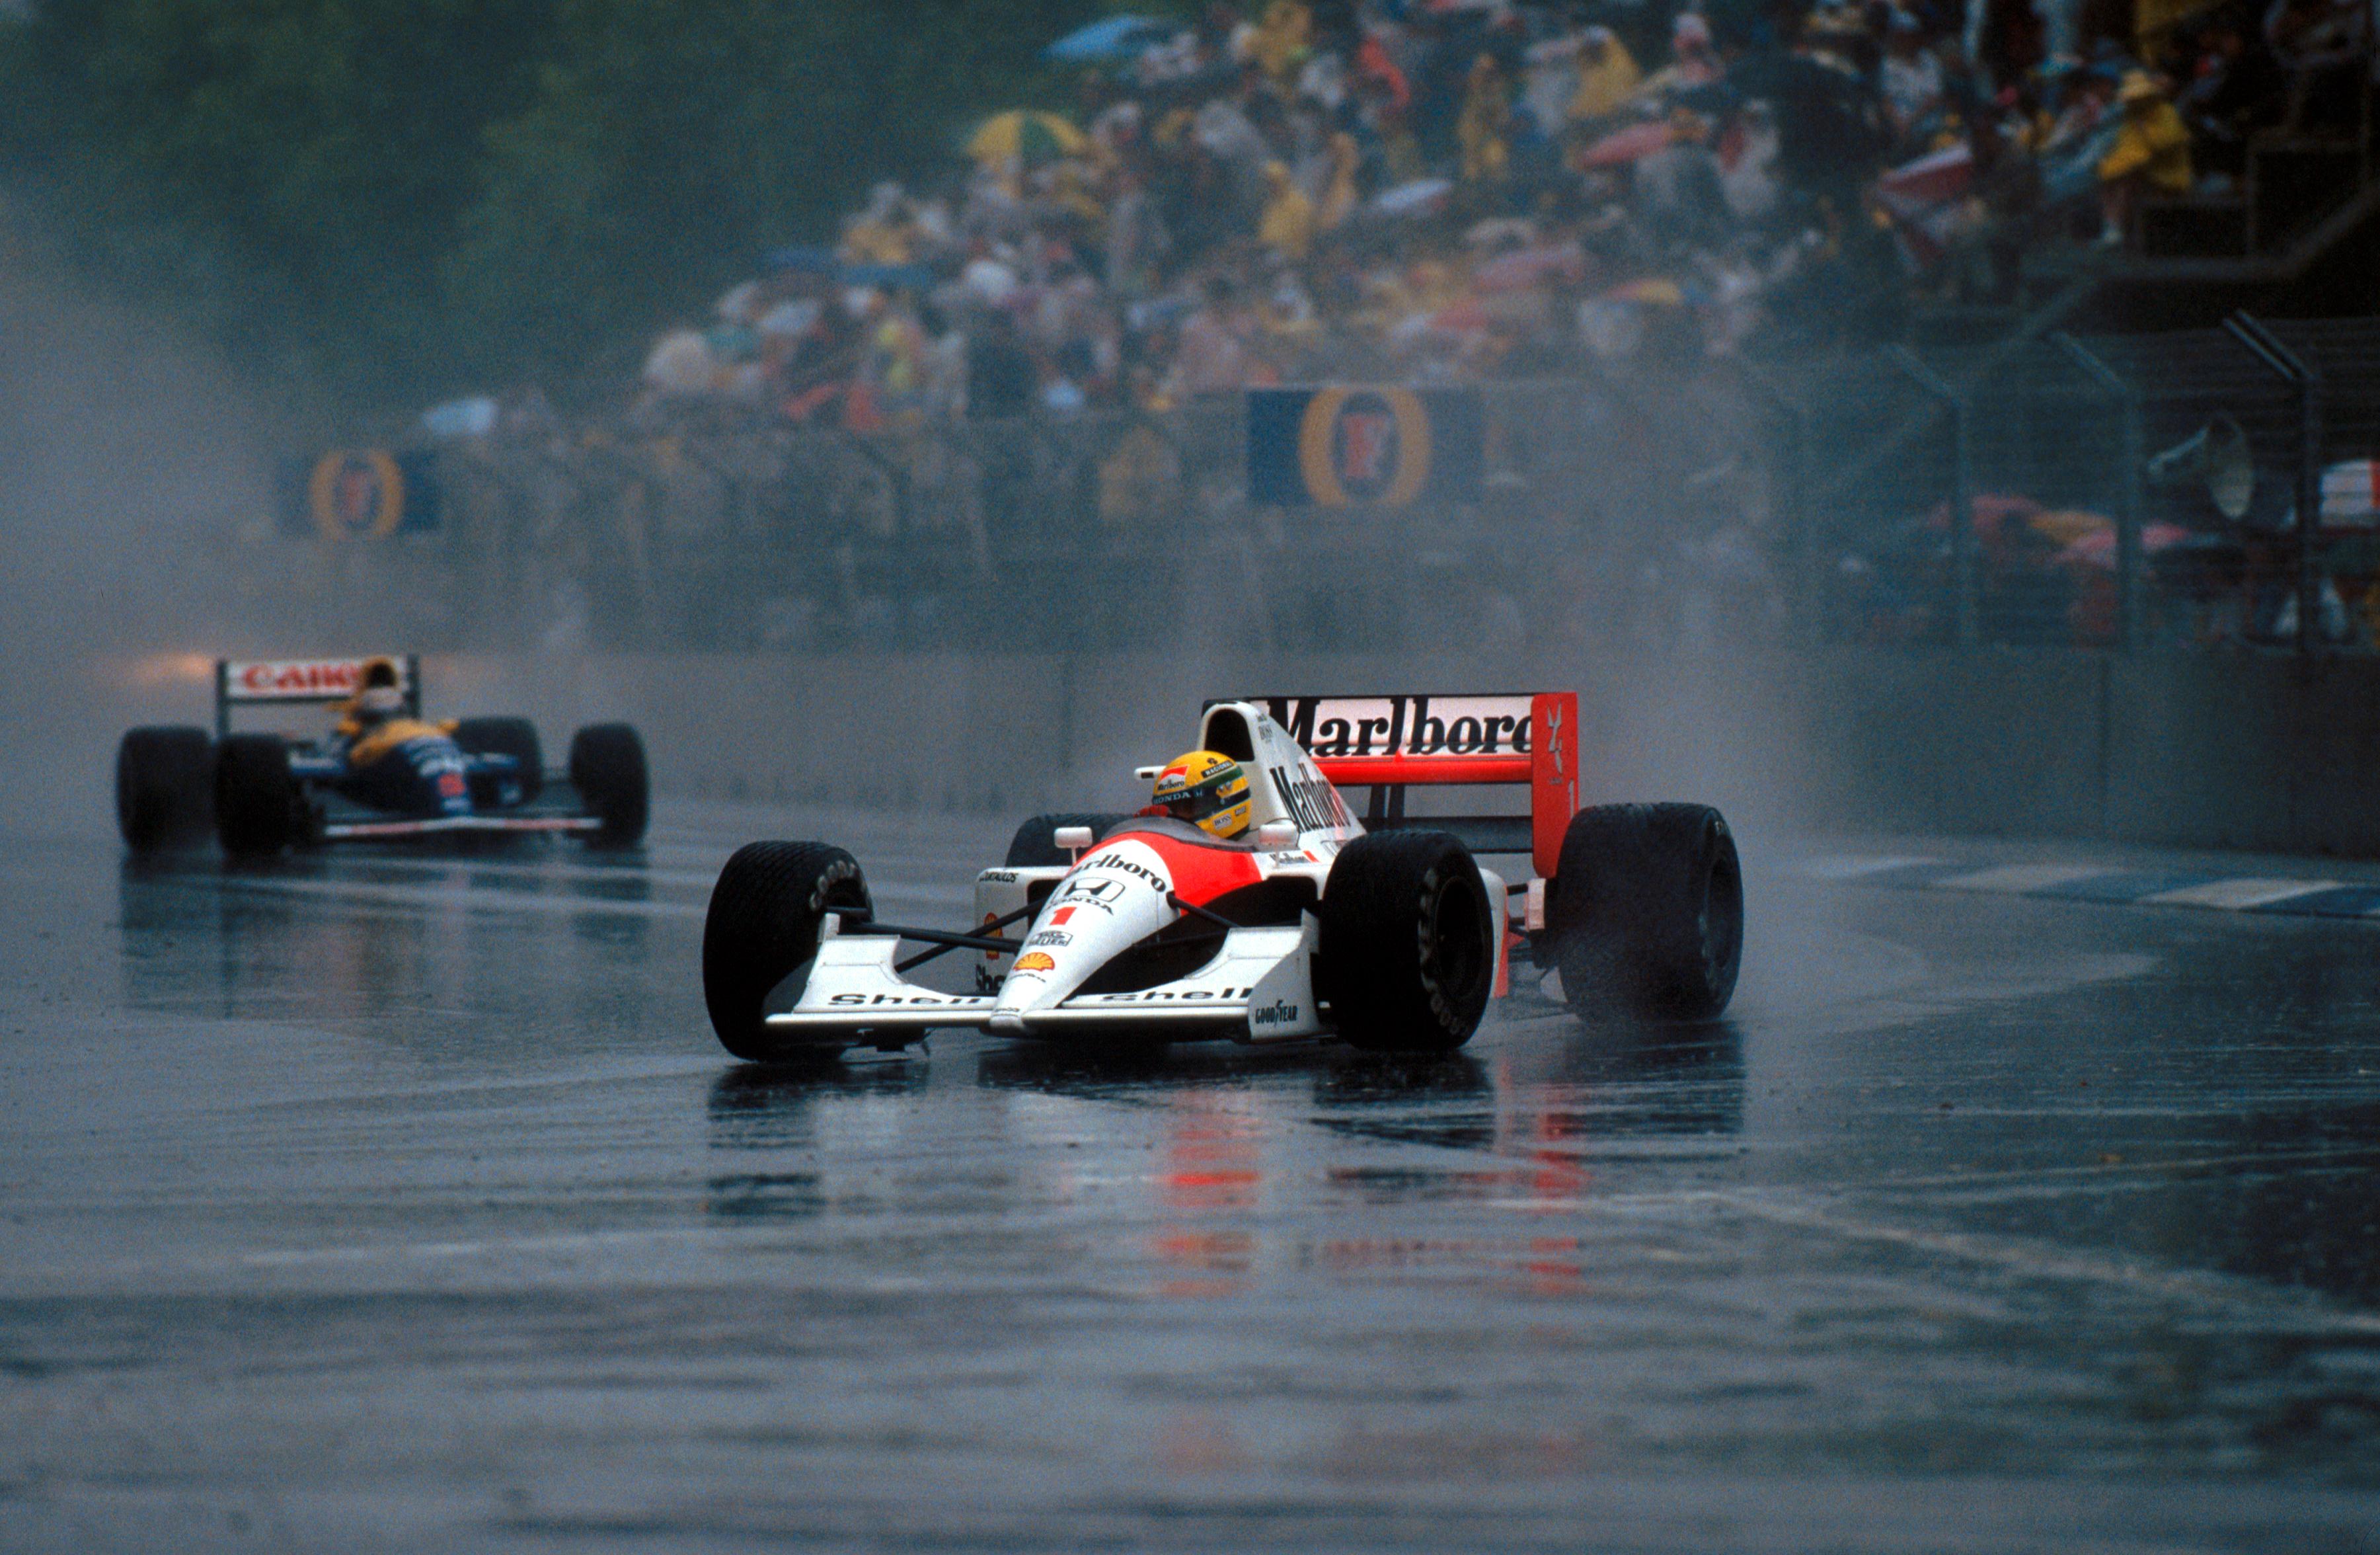 General 3601x2352 Formula 1 McLaren McLaren MP4 Marlboro Ayrton Senna helmet rain racing